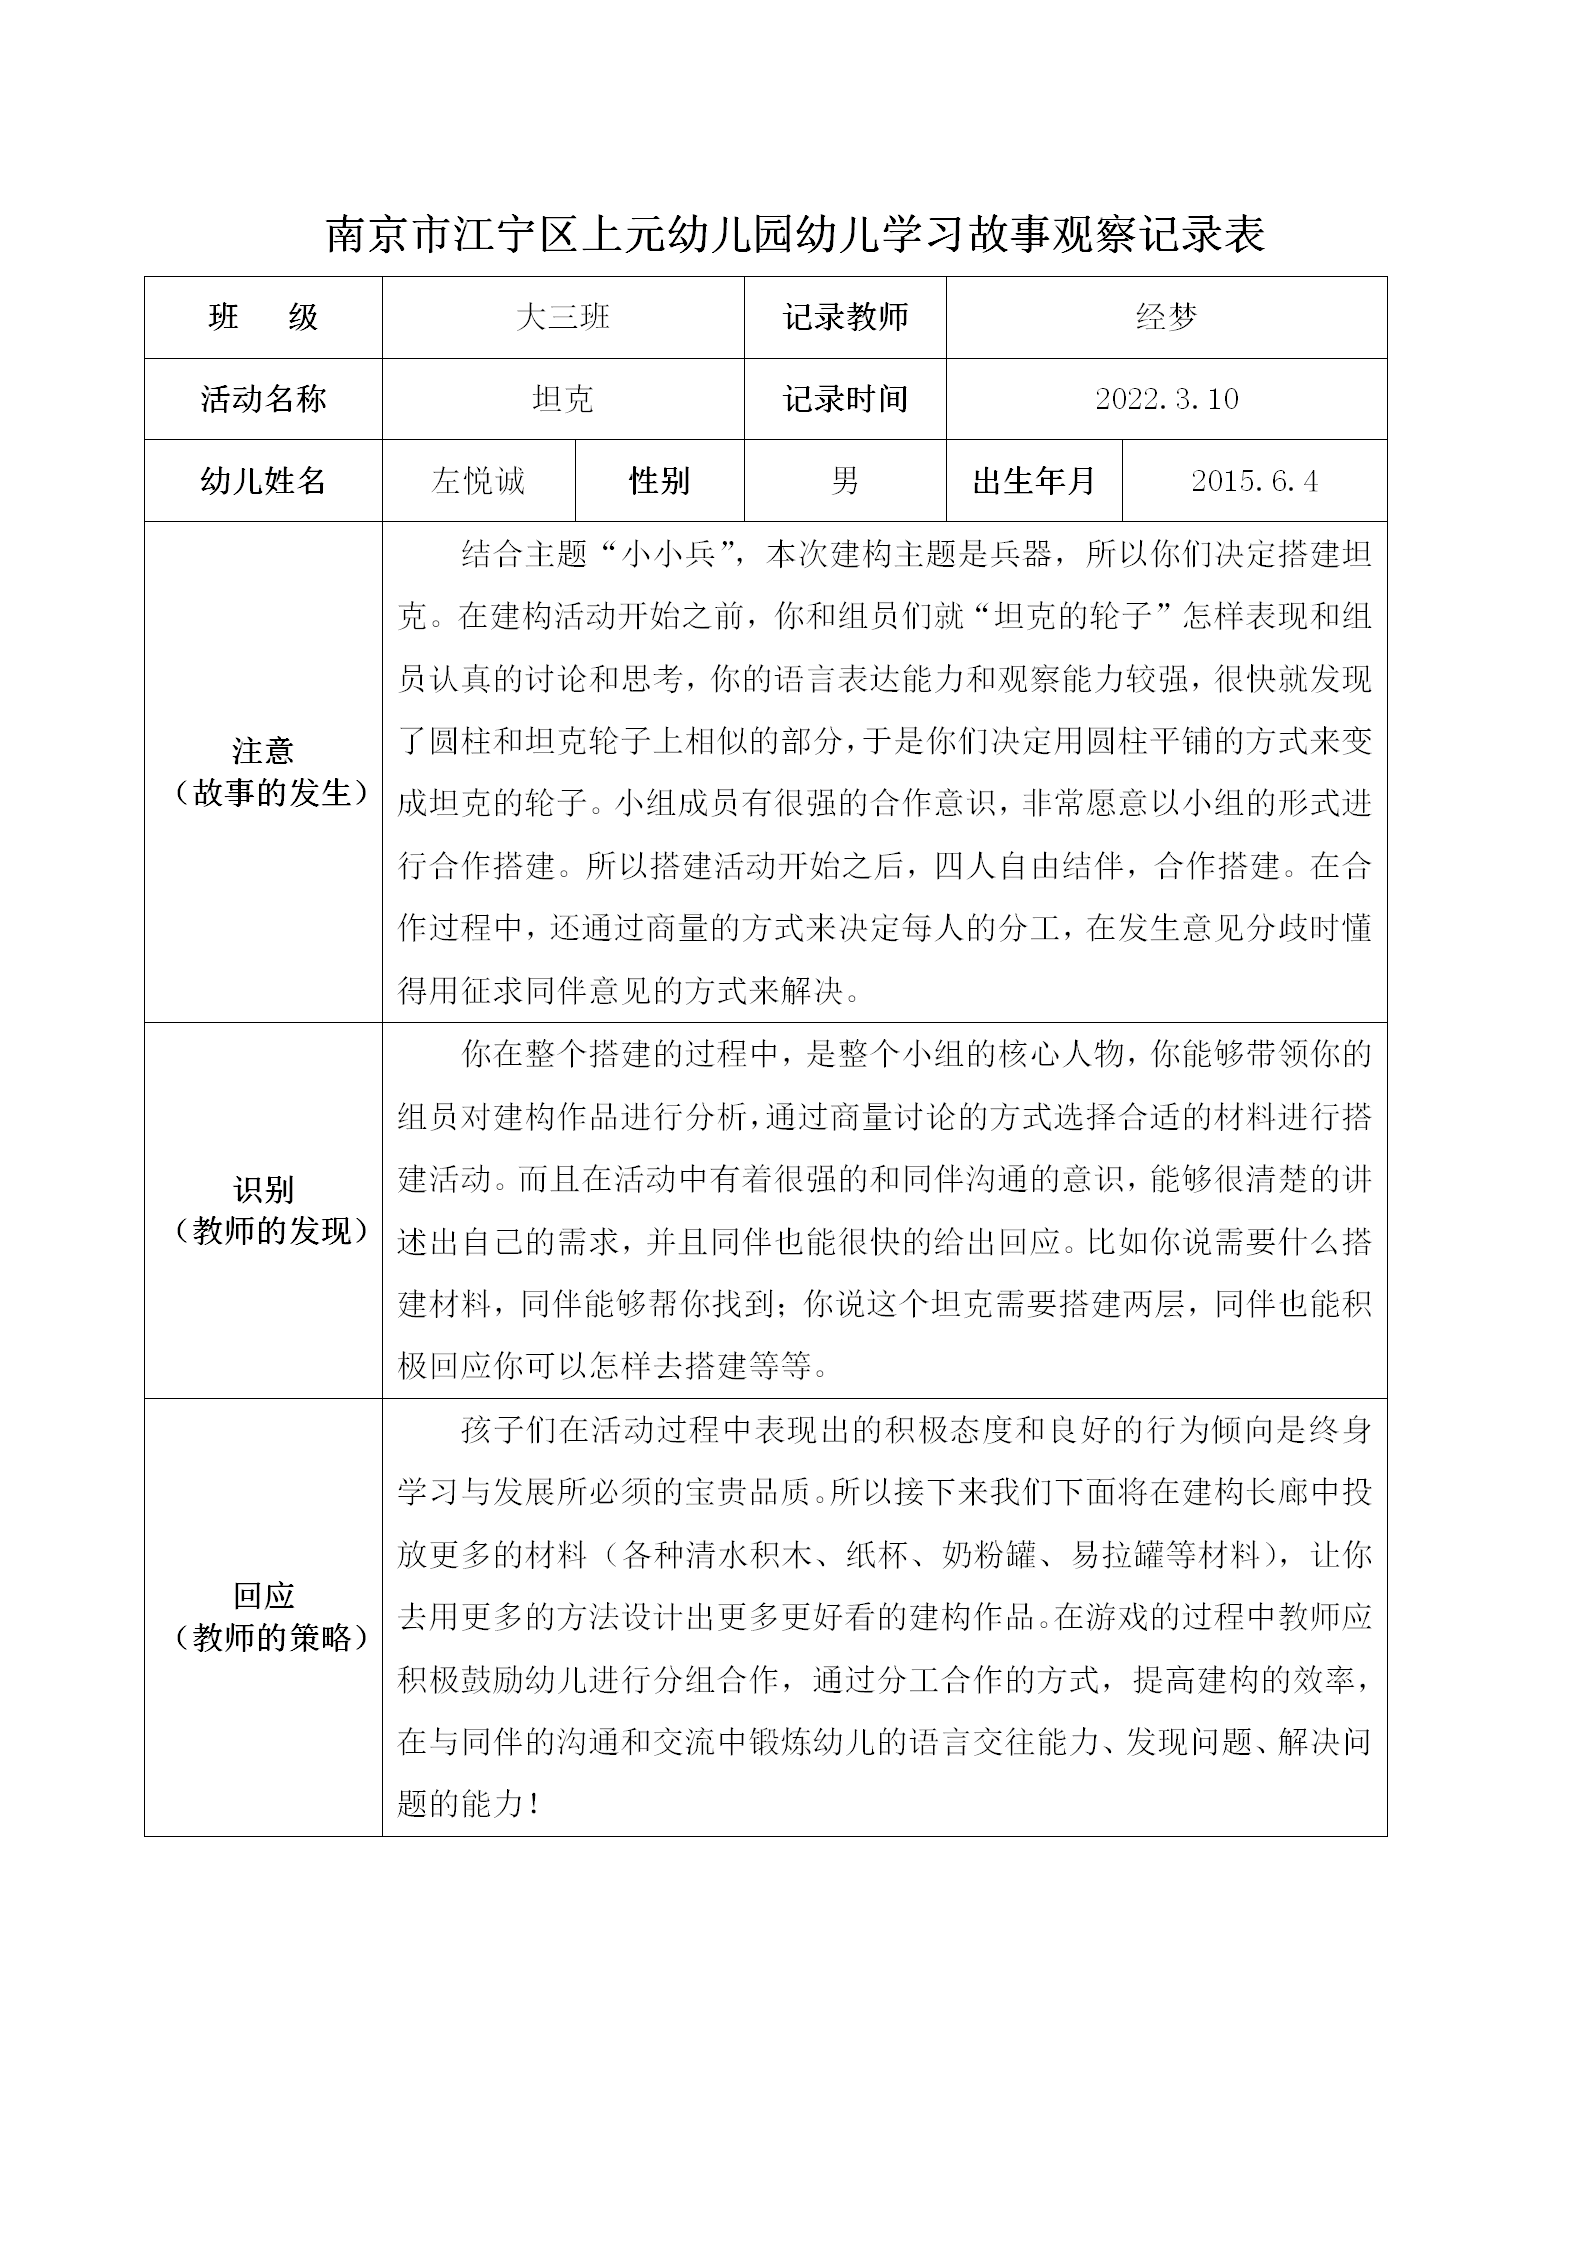 南京市江宁区上元幼儿园幼儿学习故事观察记录表（2）_01.png